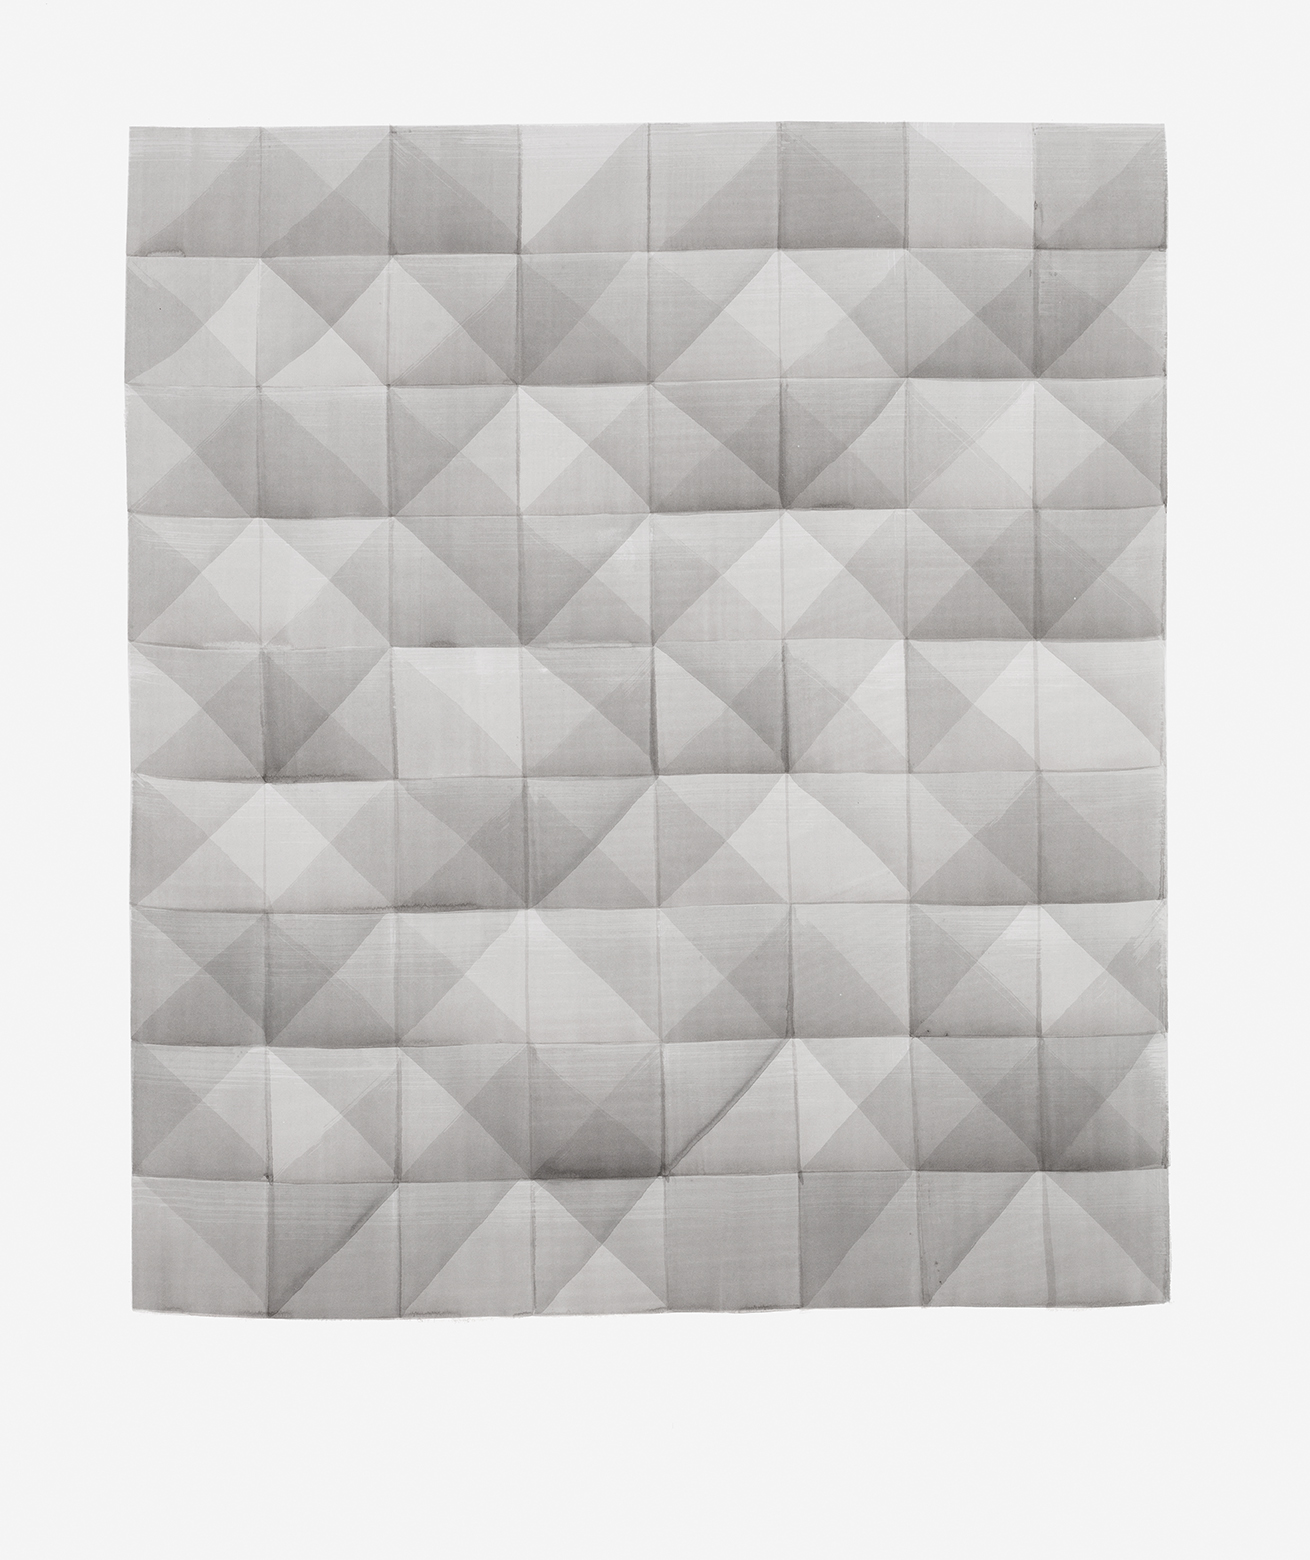 LUISE VON ROHDEN für L. (hvtt m/u 9/8), 2018, Tusche auf Papier, 140 × 120 cm, Foto: Thomas Bruns